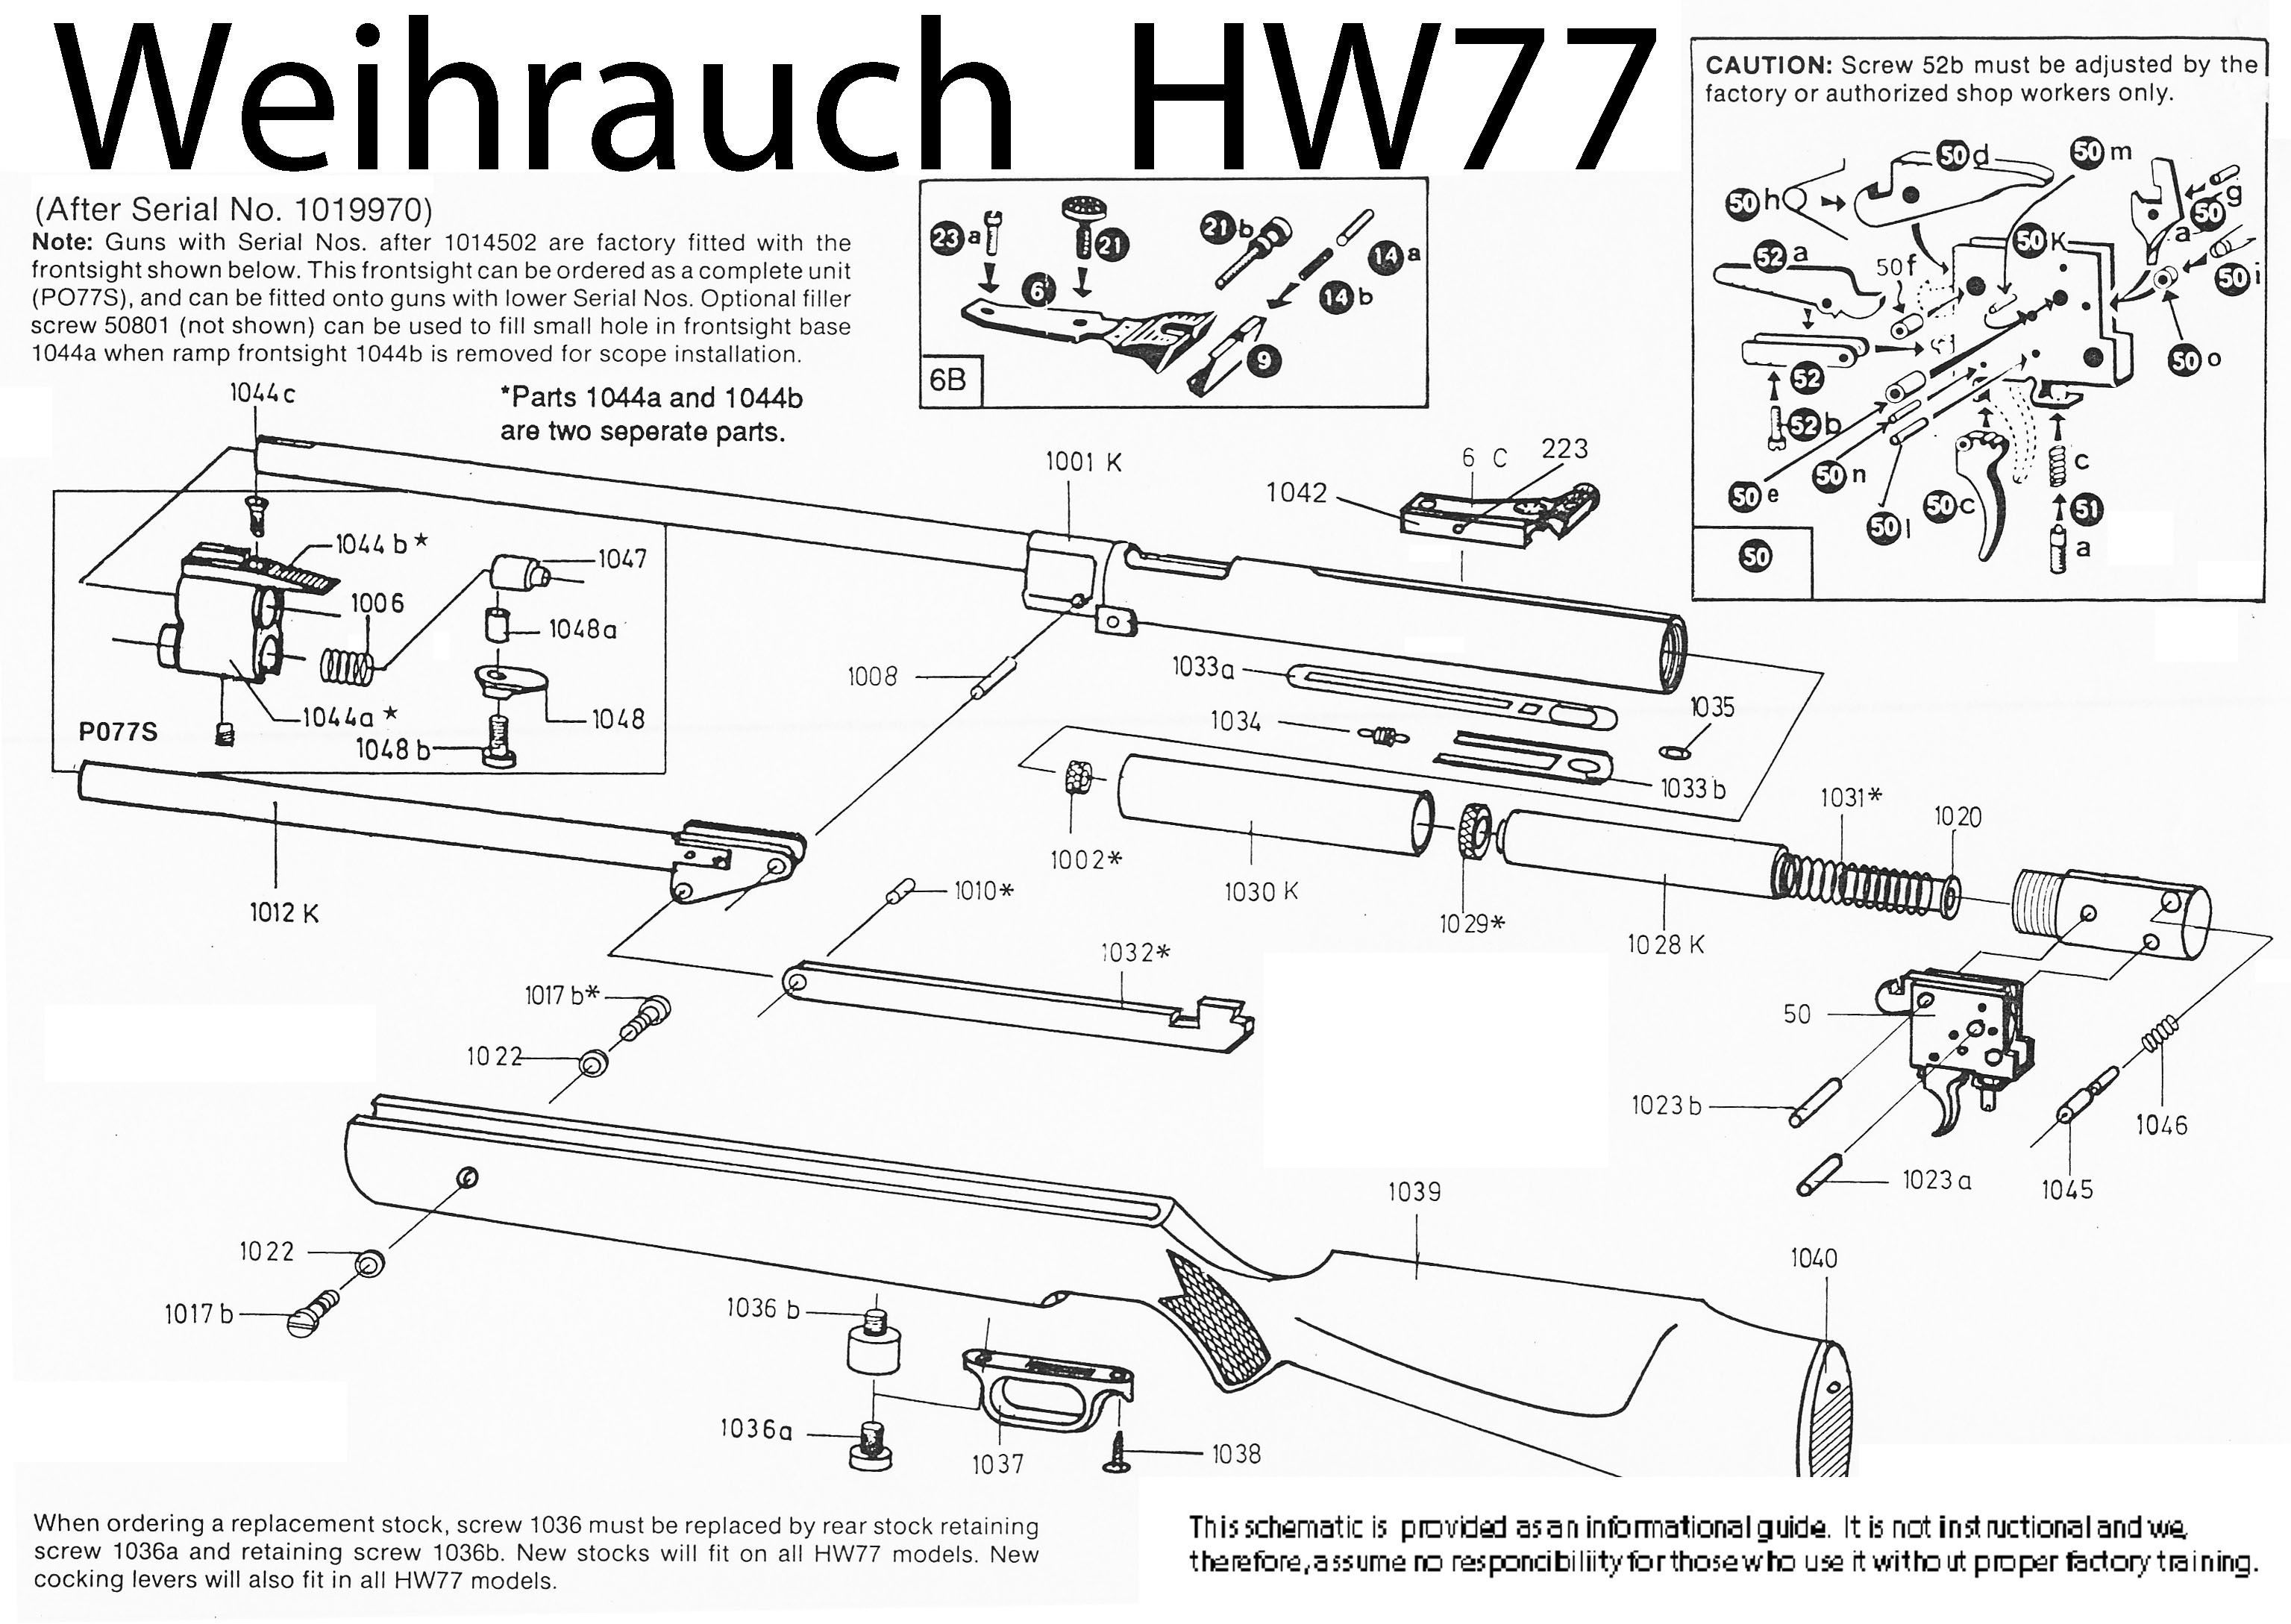 HW77 Schematic